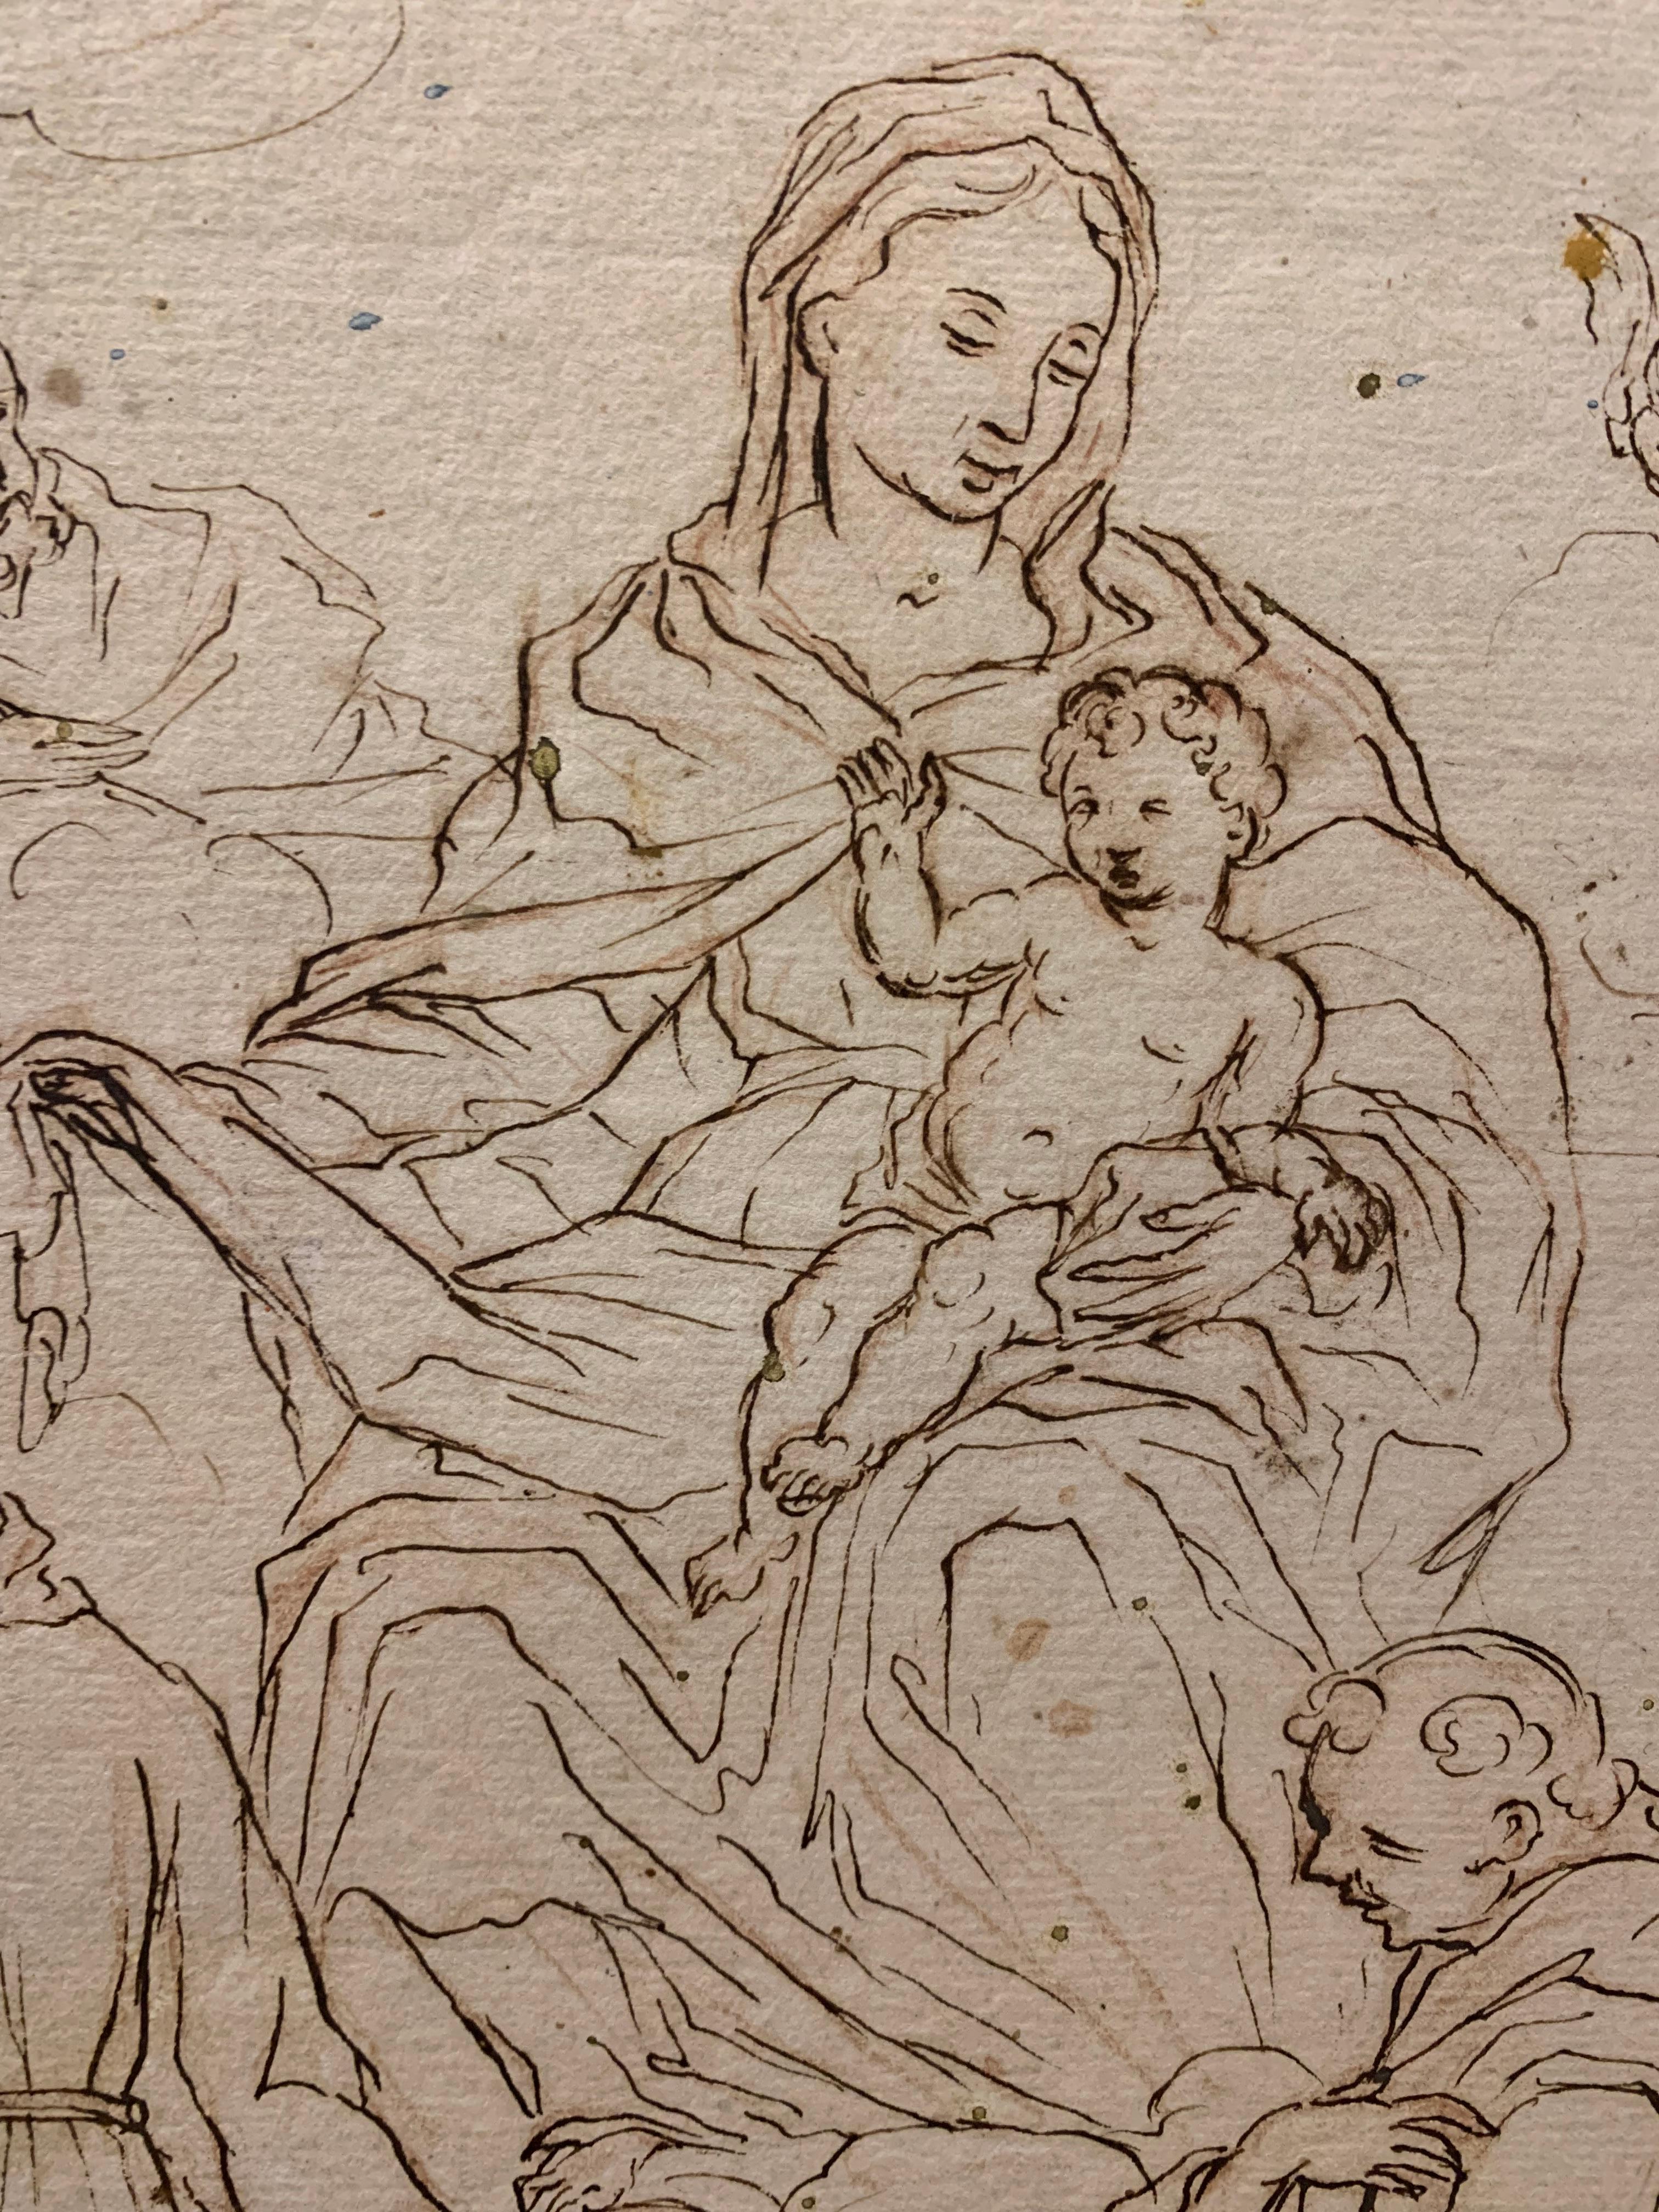 Vierge à l'enfant, saint François, saint Antoine et d'autres saints franciscains, XVIIe-XVIIIe siècle, dessin ancien, école d'Italie centrale.

Description : 